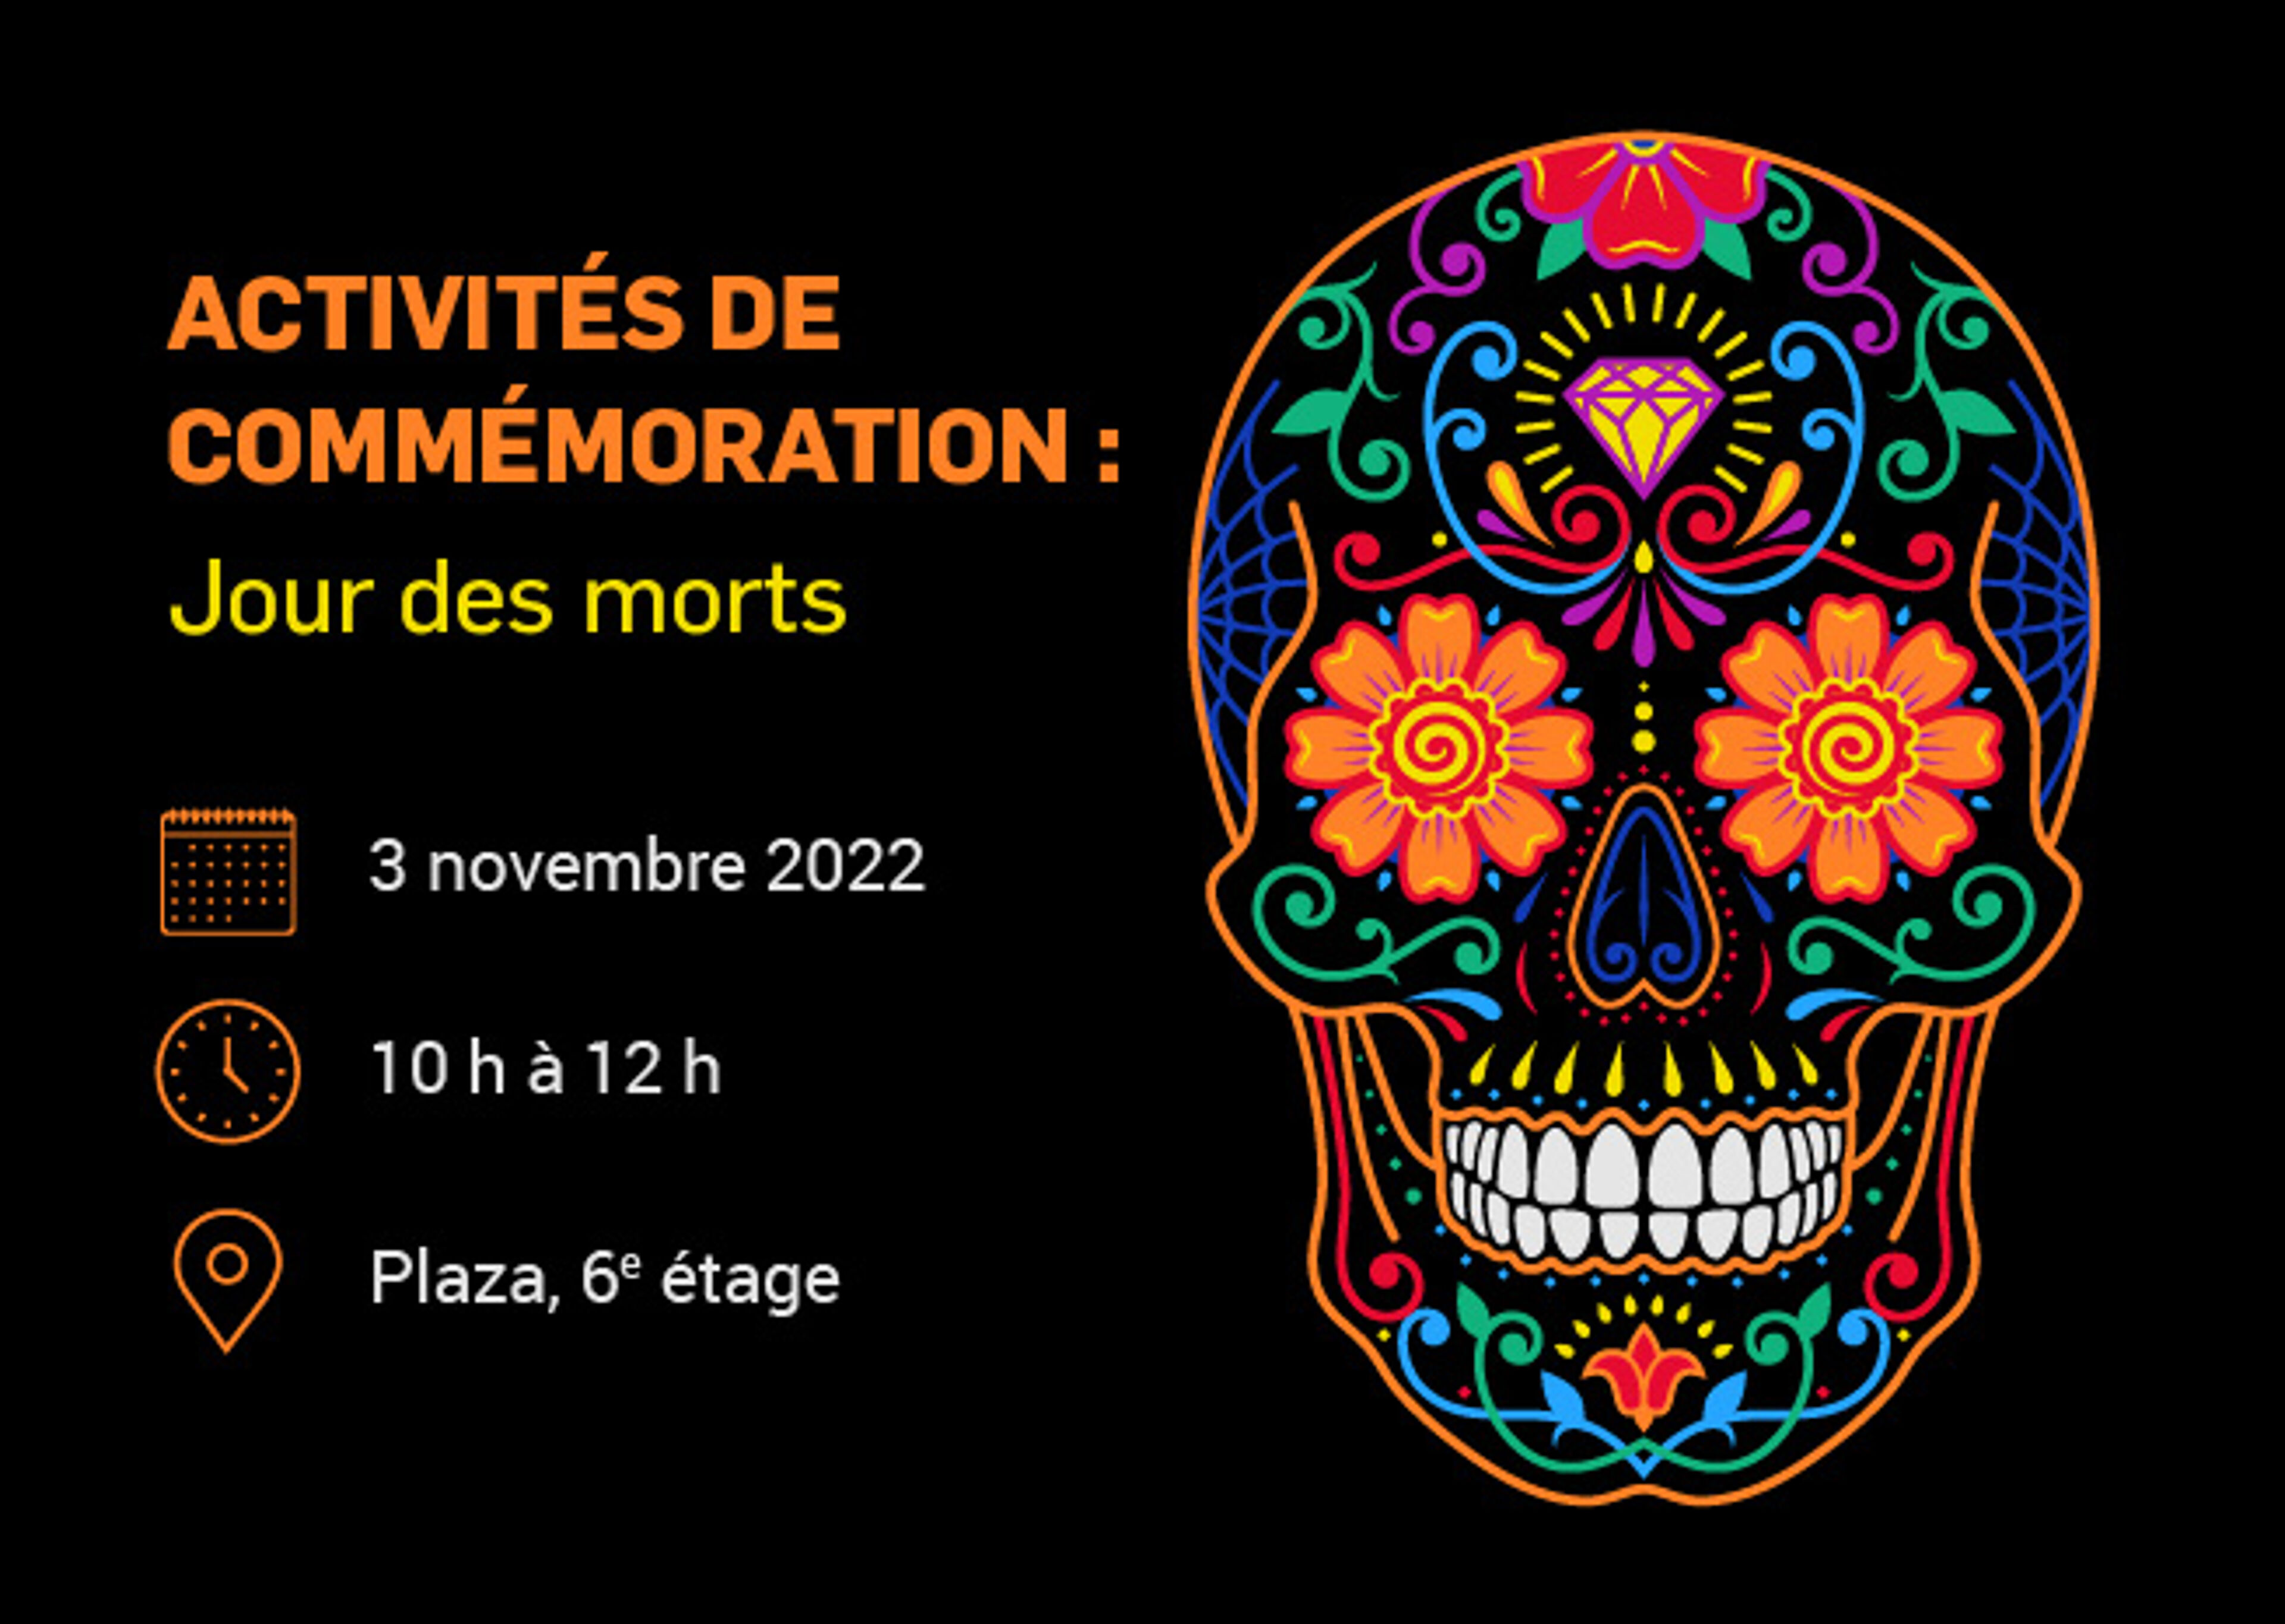 Annonce des activités commémoratives du Jour des Morts le 3 novembre 2022, de 10 h à 12 h à Plaza, 6e étage.